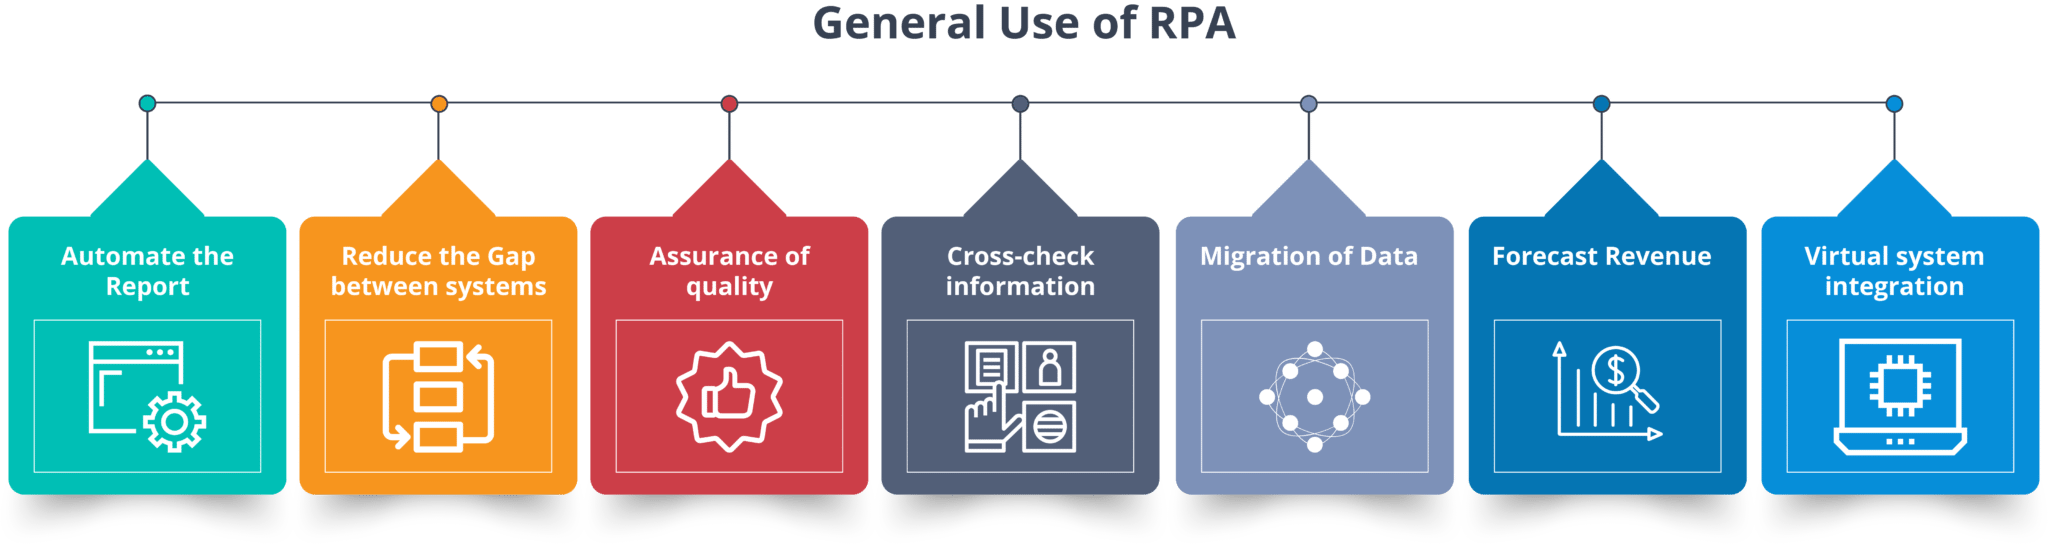 General Use Of RPA - RPA Tutorial - Edureka